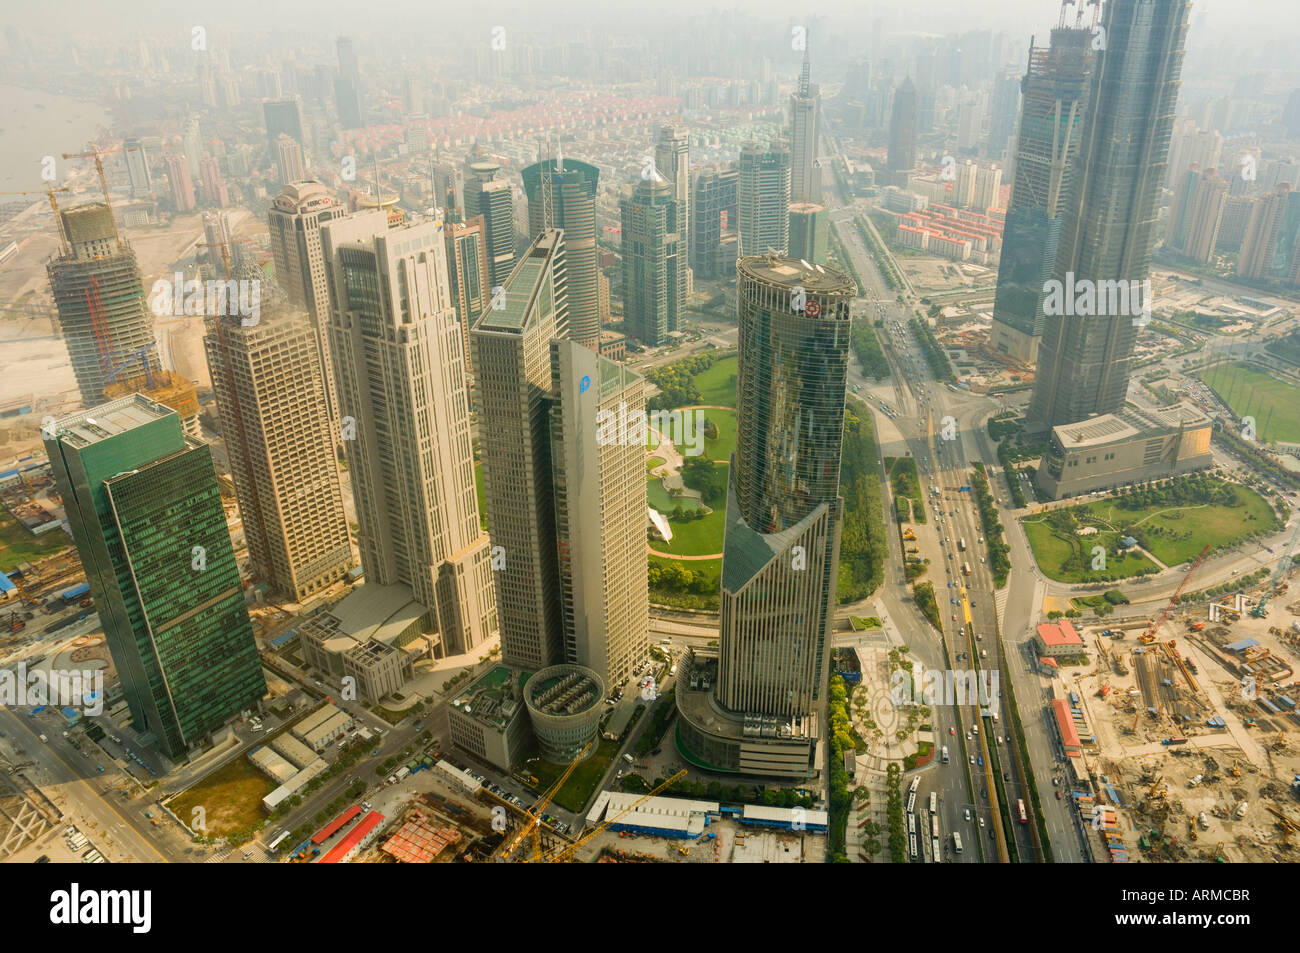 Vista aérea de la Oriental Pearl Tower de la zona financiera y comercial de Lujiazui, Shanghai, China, Asia Foto de stock